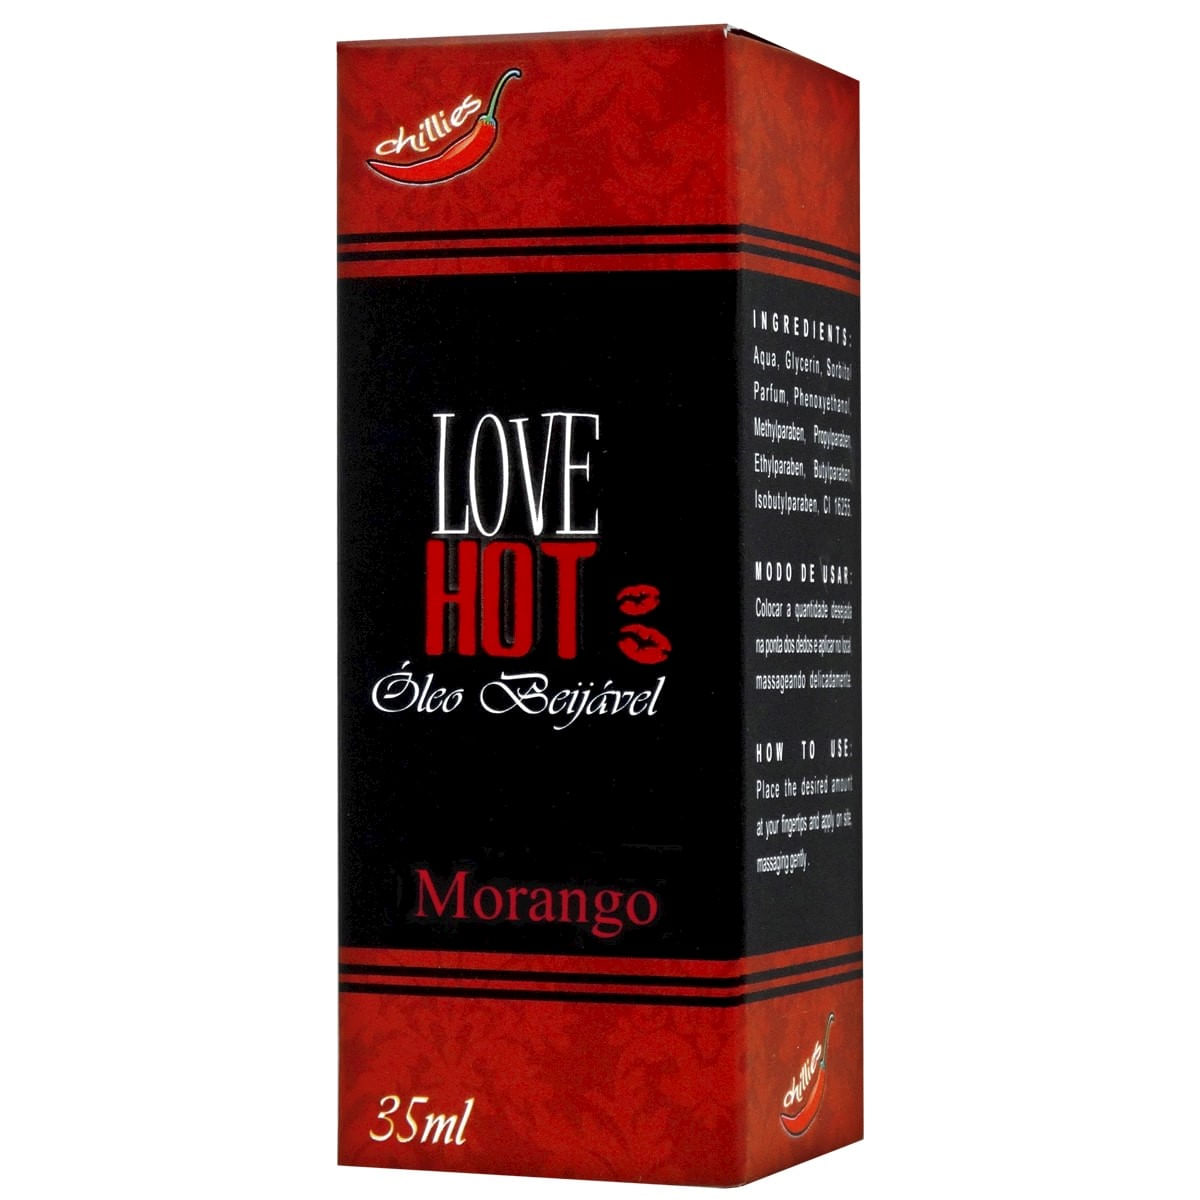 Love Hot Óleo Beijável de Morango 35ml Chillies